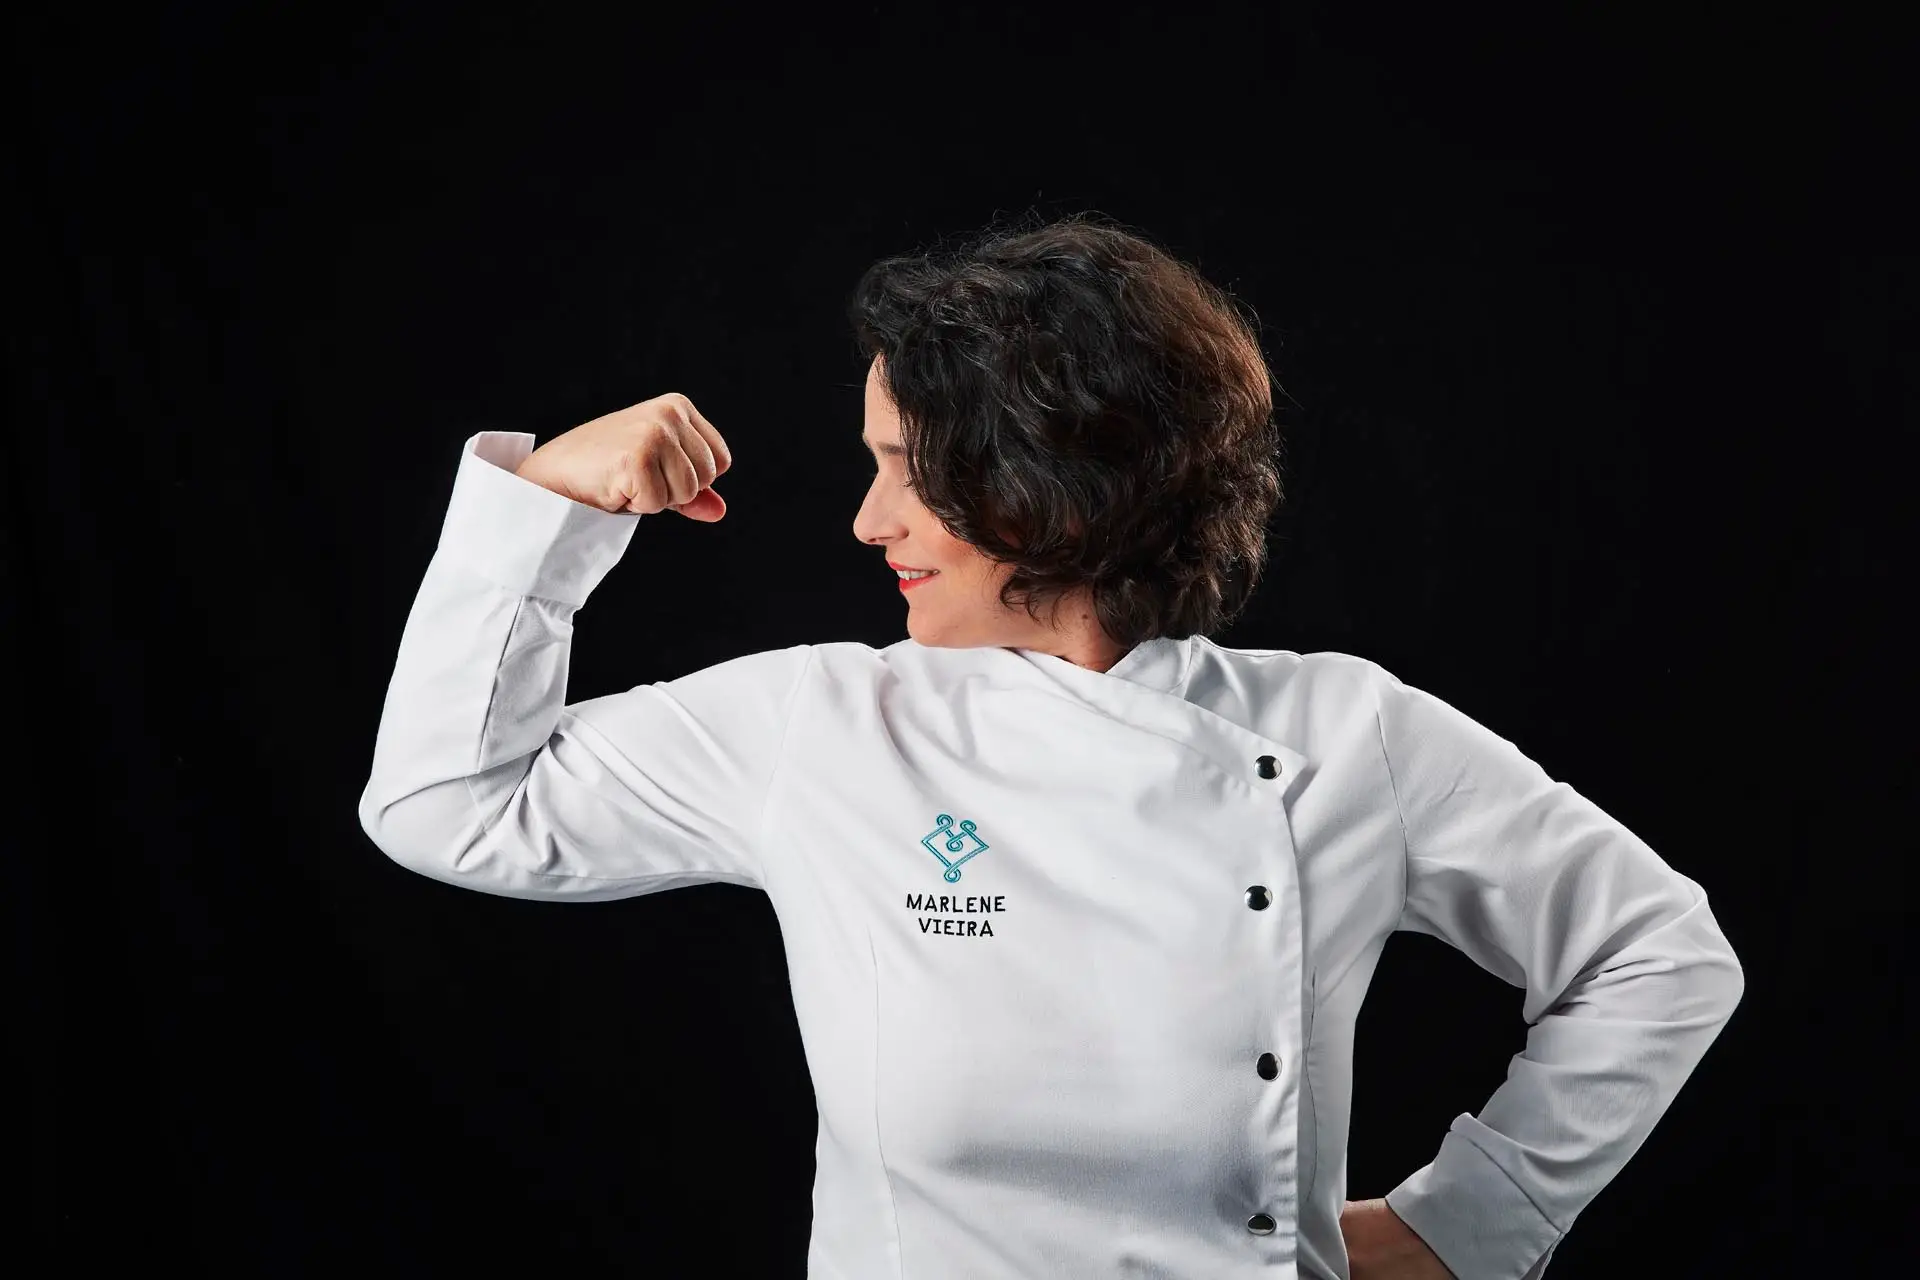 "Portugal como um destino gastronómico de alta cozinha”: Marlene Vieira junta constelação de estrelas em jantar único